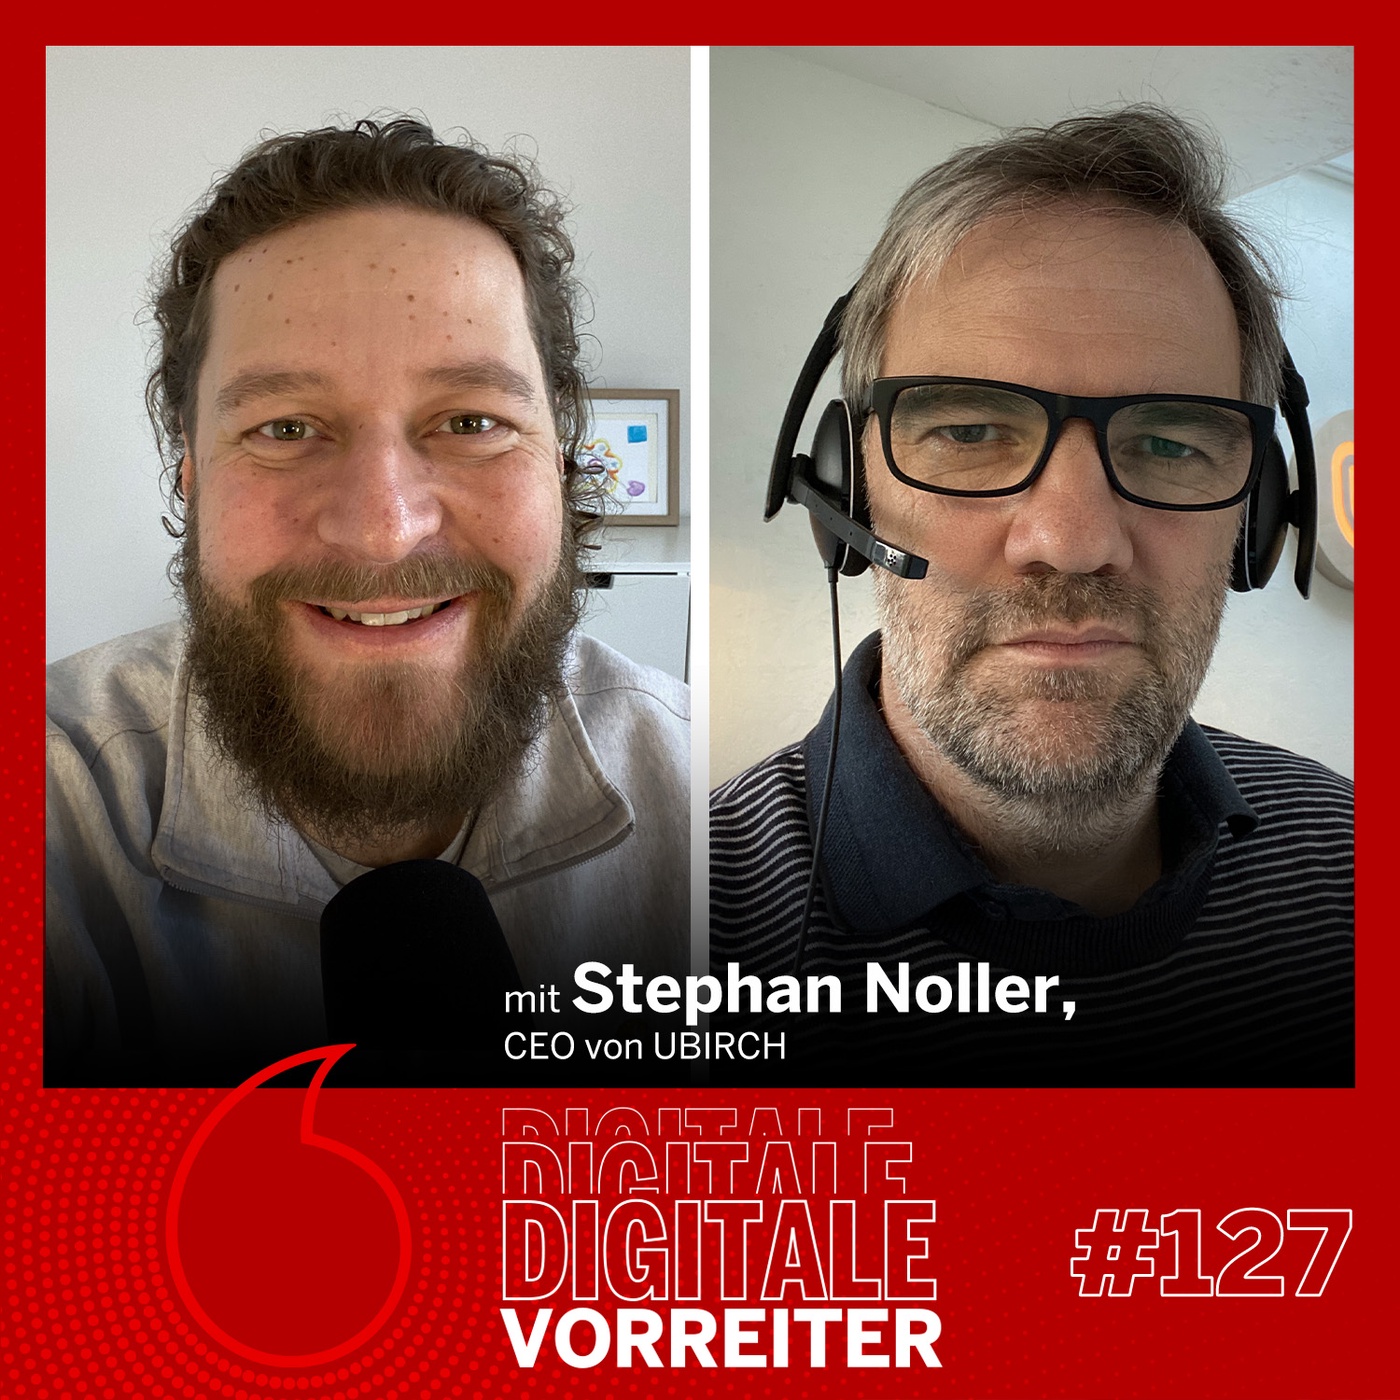 Sicher, sicherer, digitale Zertifikate - Stephan Noller von UBIRCH über Blockchain-Technologien und Sicherheit im Web